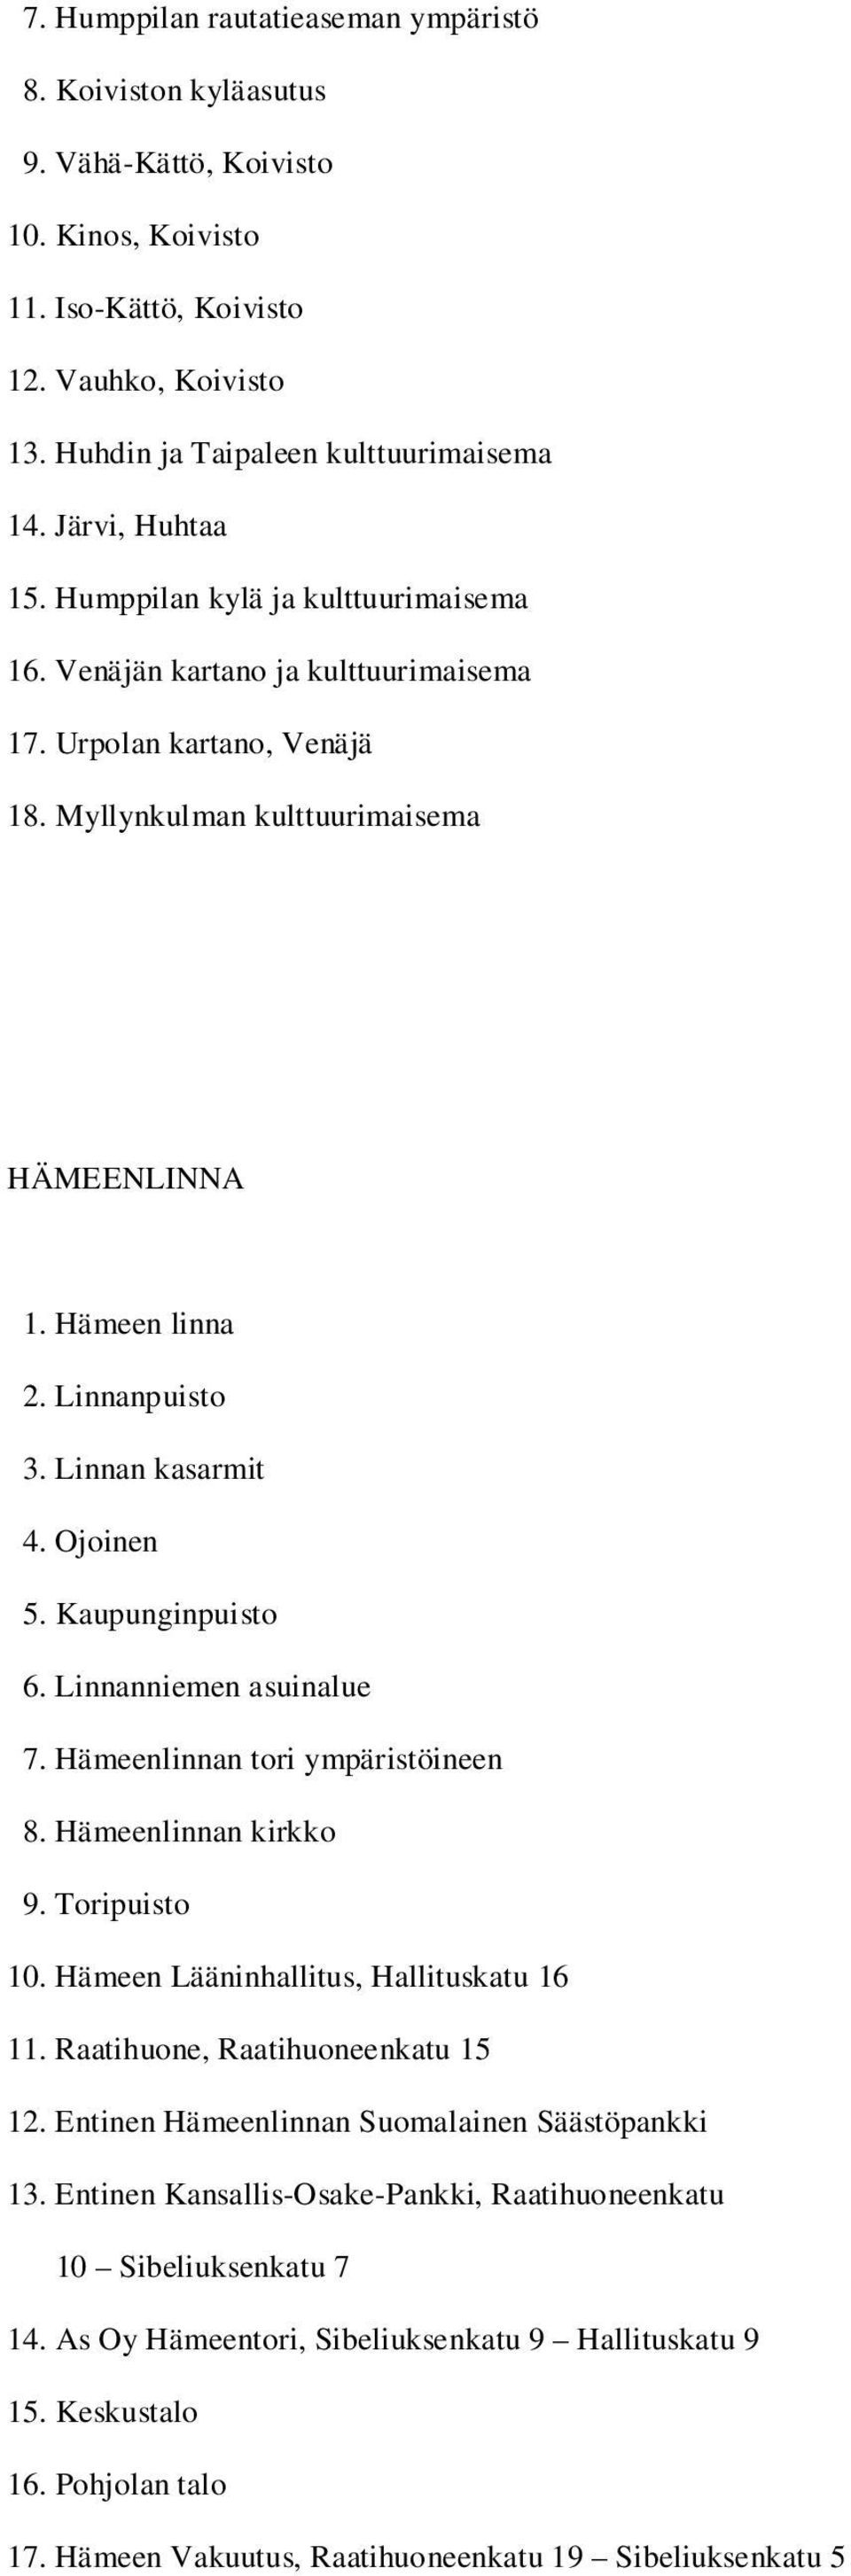 Linnanpuisto 3. Linnan kasarmit 4. Ojoinen 5. Kaupunginpuisto 6. Linnanniemen asuinalue 7. Hämeenlinnan tori ympäristöineen 8. Hämeenlinnan kirkko 9. Toripuisto 10.